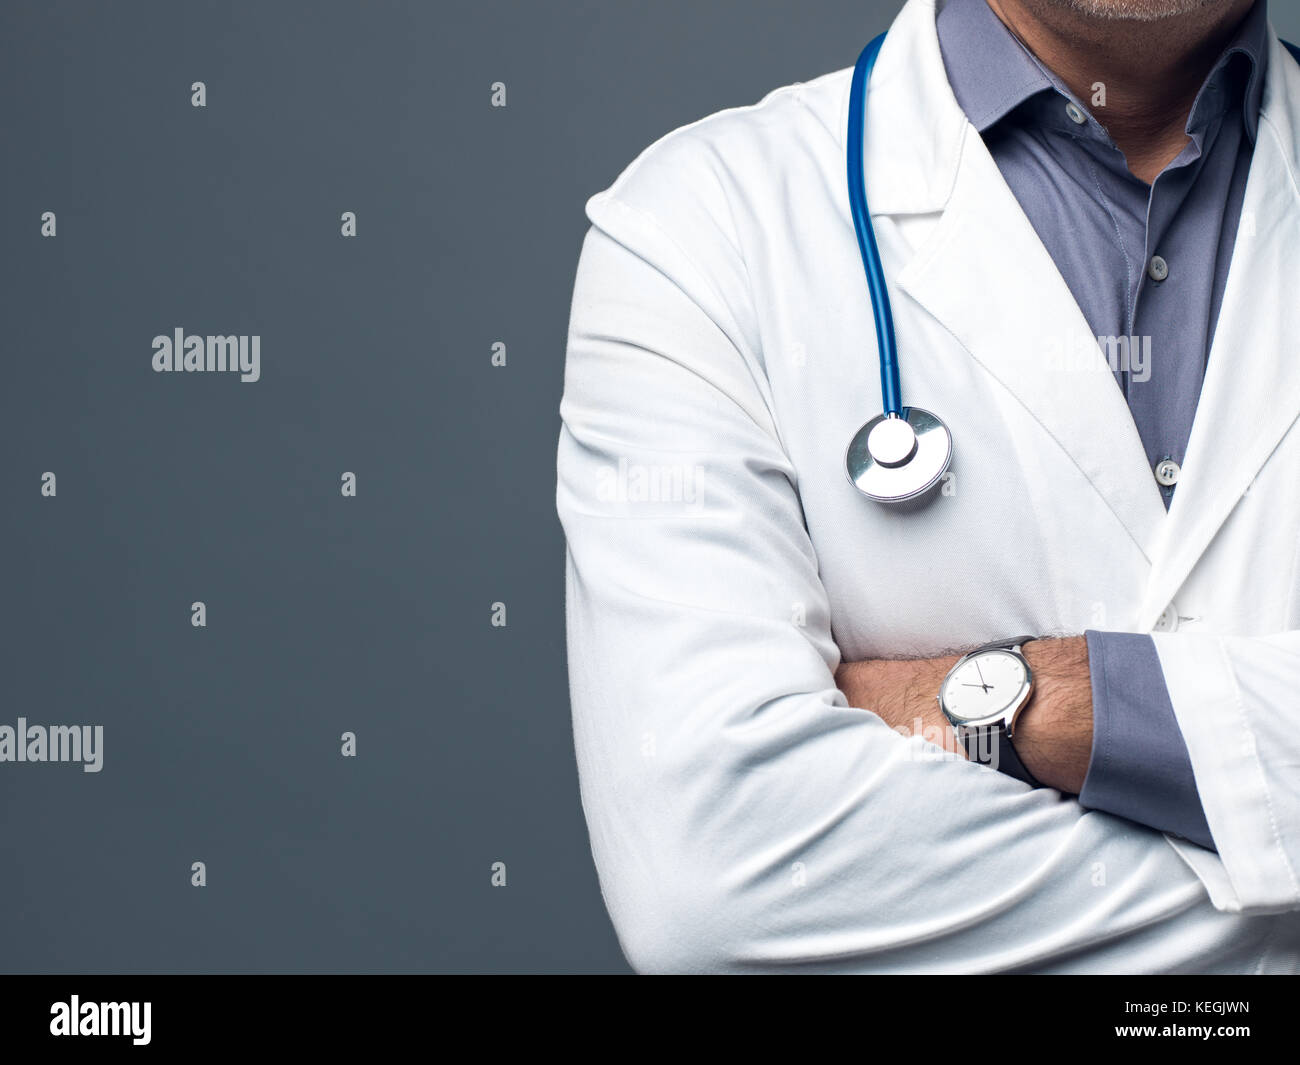 Zuversichtlich Arzt mit verschränkten Armen, medizinische Beratung und Krankenversicherung Konzept posing Stockfoto